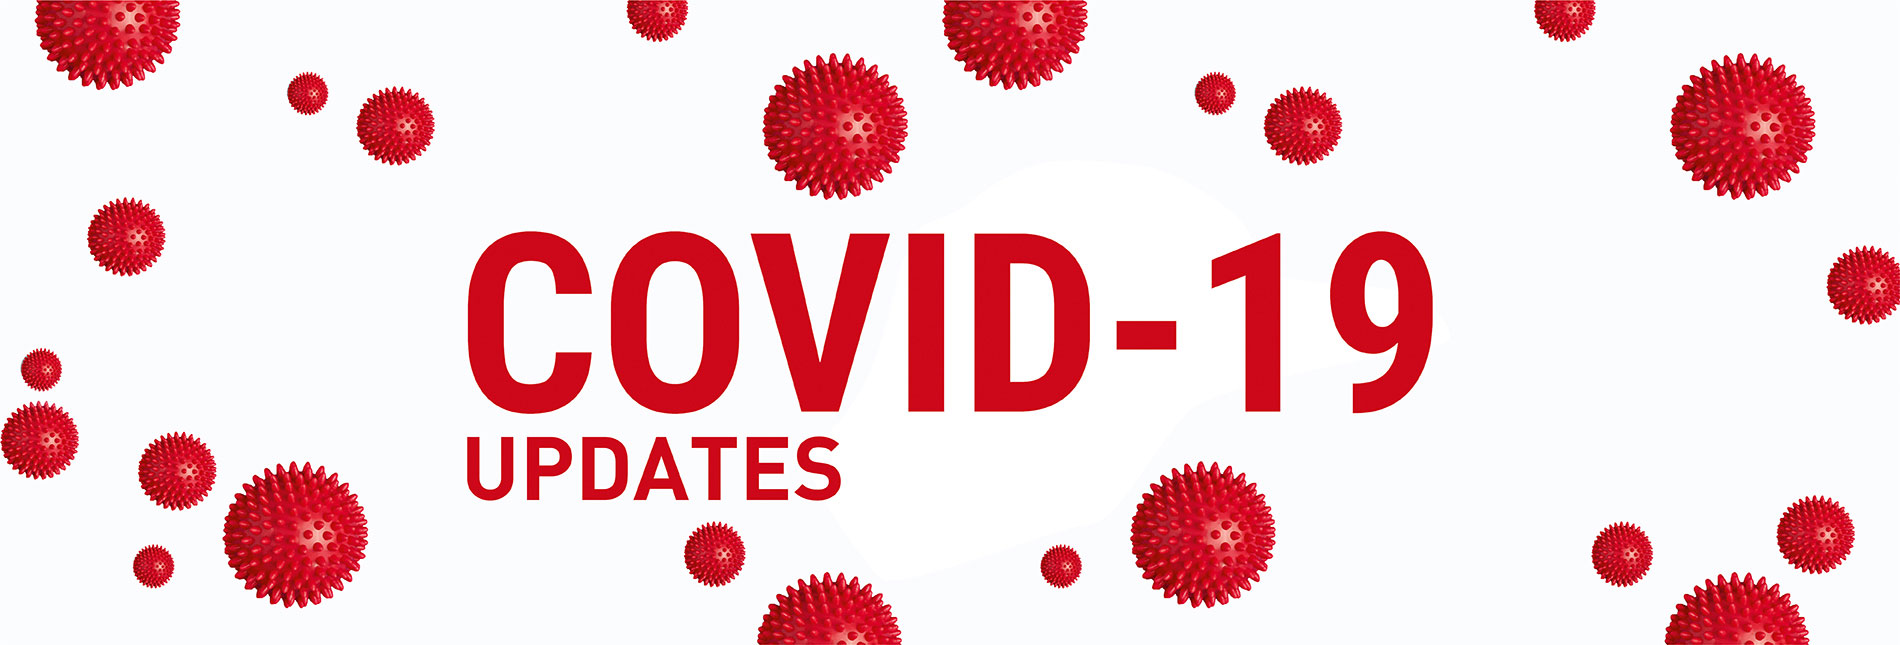 COVID-19 (Coronavirus) Updates - Chitkara University